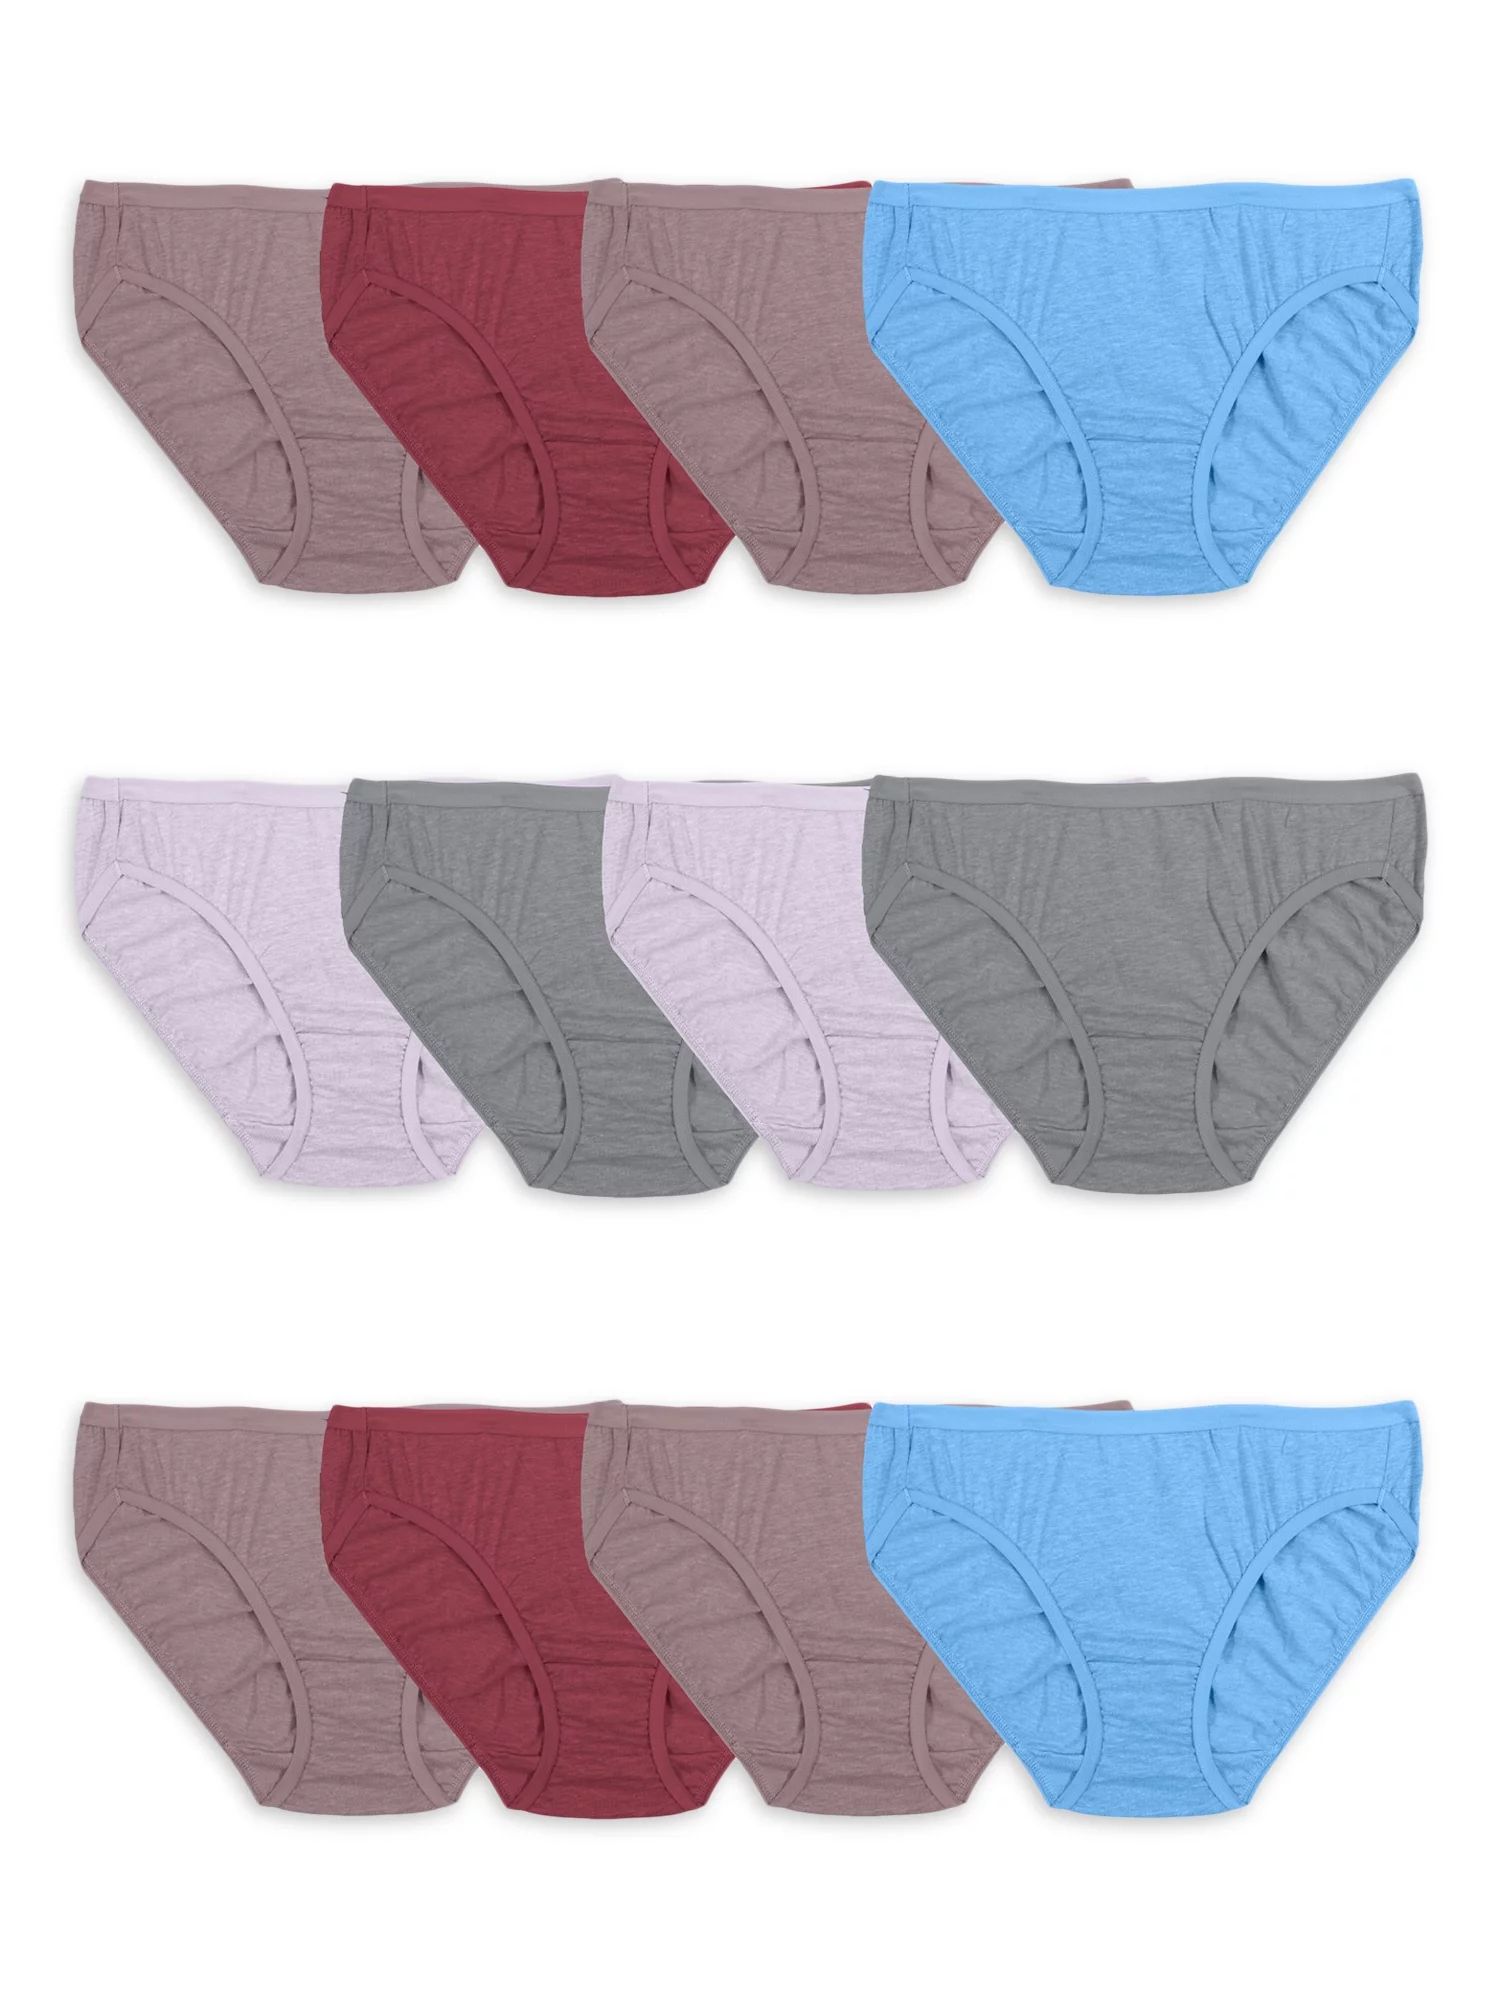 Fruit of the Loom Women's CoolBlend Hi-Cut Underwear, 4 Pack, Sizes S-2XL | Walmart (US)